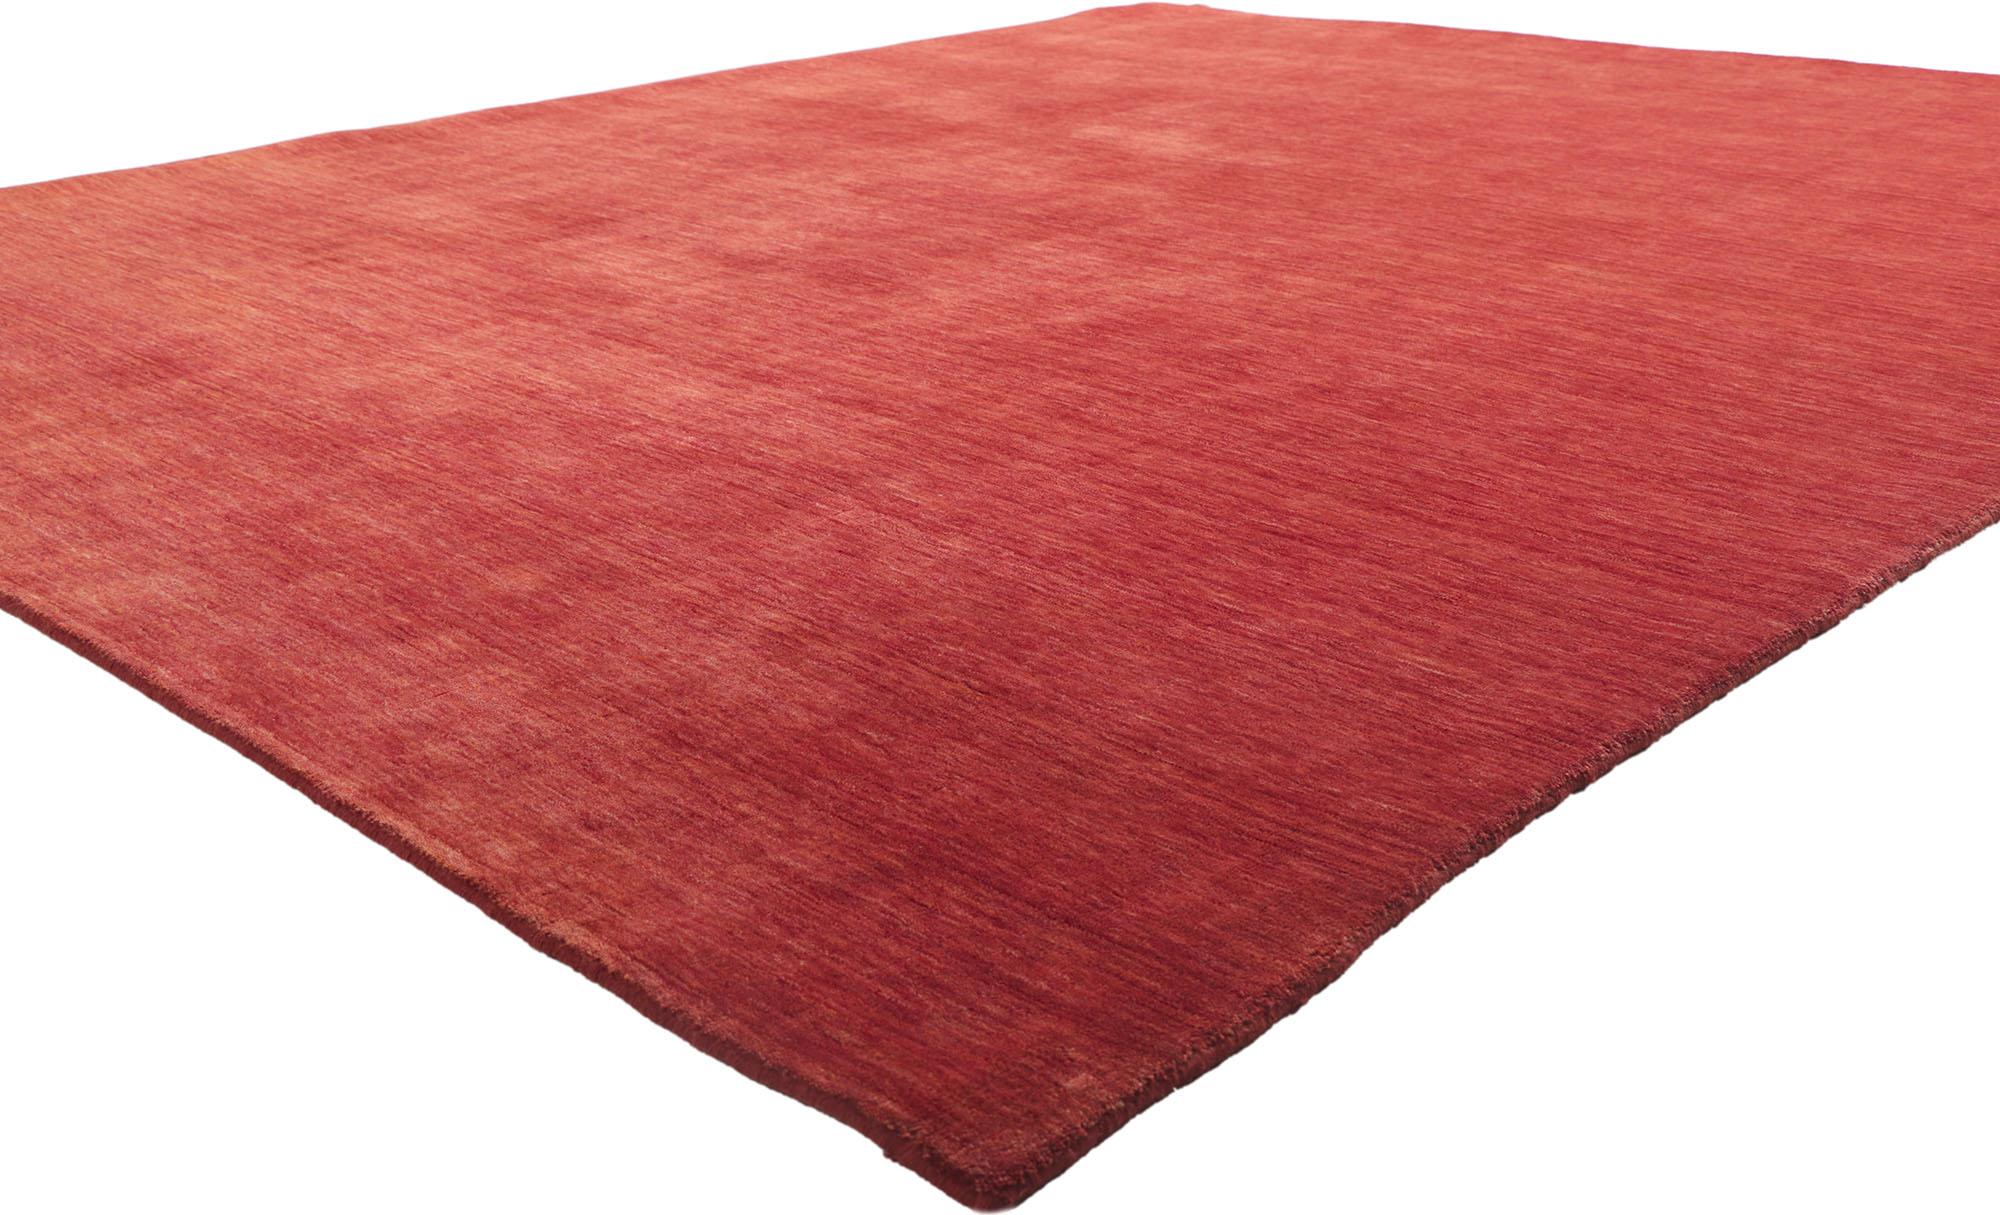 30729 New Contemporary Red Area Rug with Modern Style 08'04 x 10'00. Ce tapis indien contemporain est à la fois simple, élégant et décontracté. Il présente de superbes teintes rouges et des stries doucement dégradées d'une lisière à l'autre, qui se